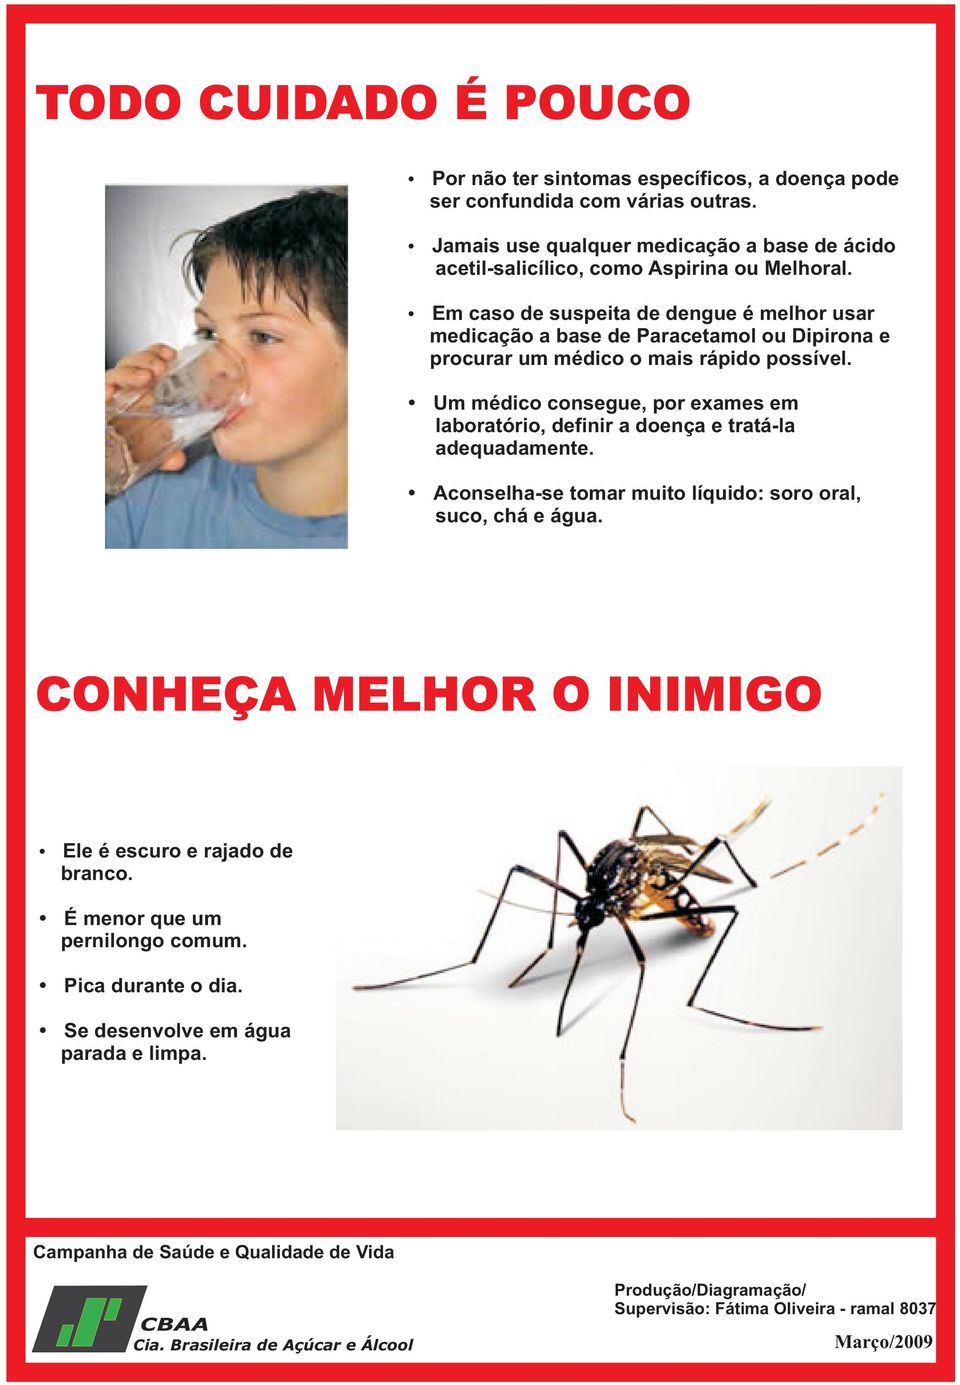 Em caso de suspeita de dengue é melhor usar medicação a base de Paracetamol ou Dipirona e procurar um médico o mais rápido possível.